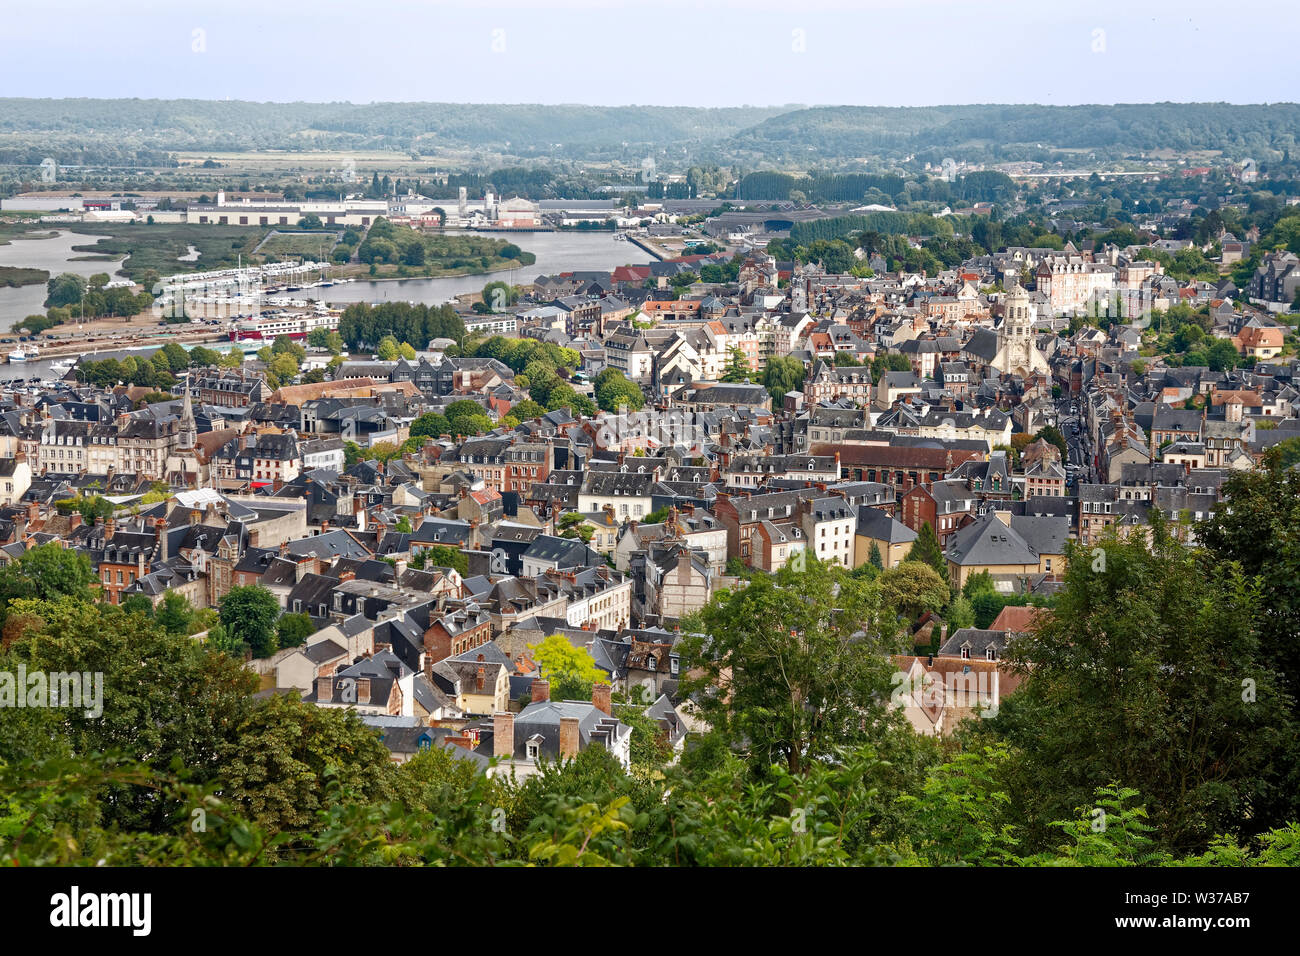 Stadtübersicht vom Mont Joli; Stadtbild, Gebäude nahe beieinander, die fernen Hügel, Landschaft, Europa, Normandie, Honfleur, Frankreich; Sommer; horizontal Stockfoto